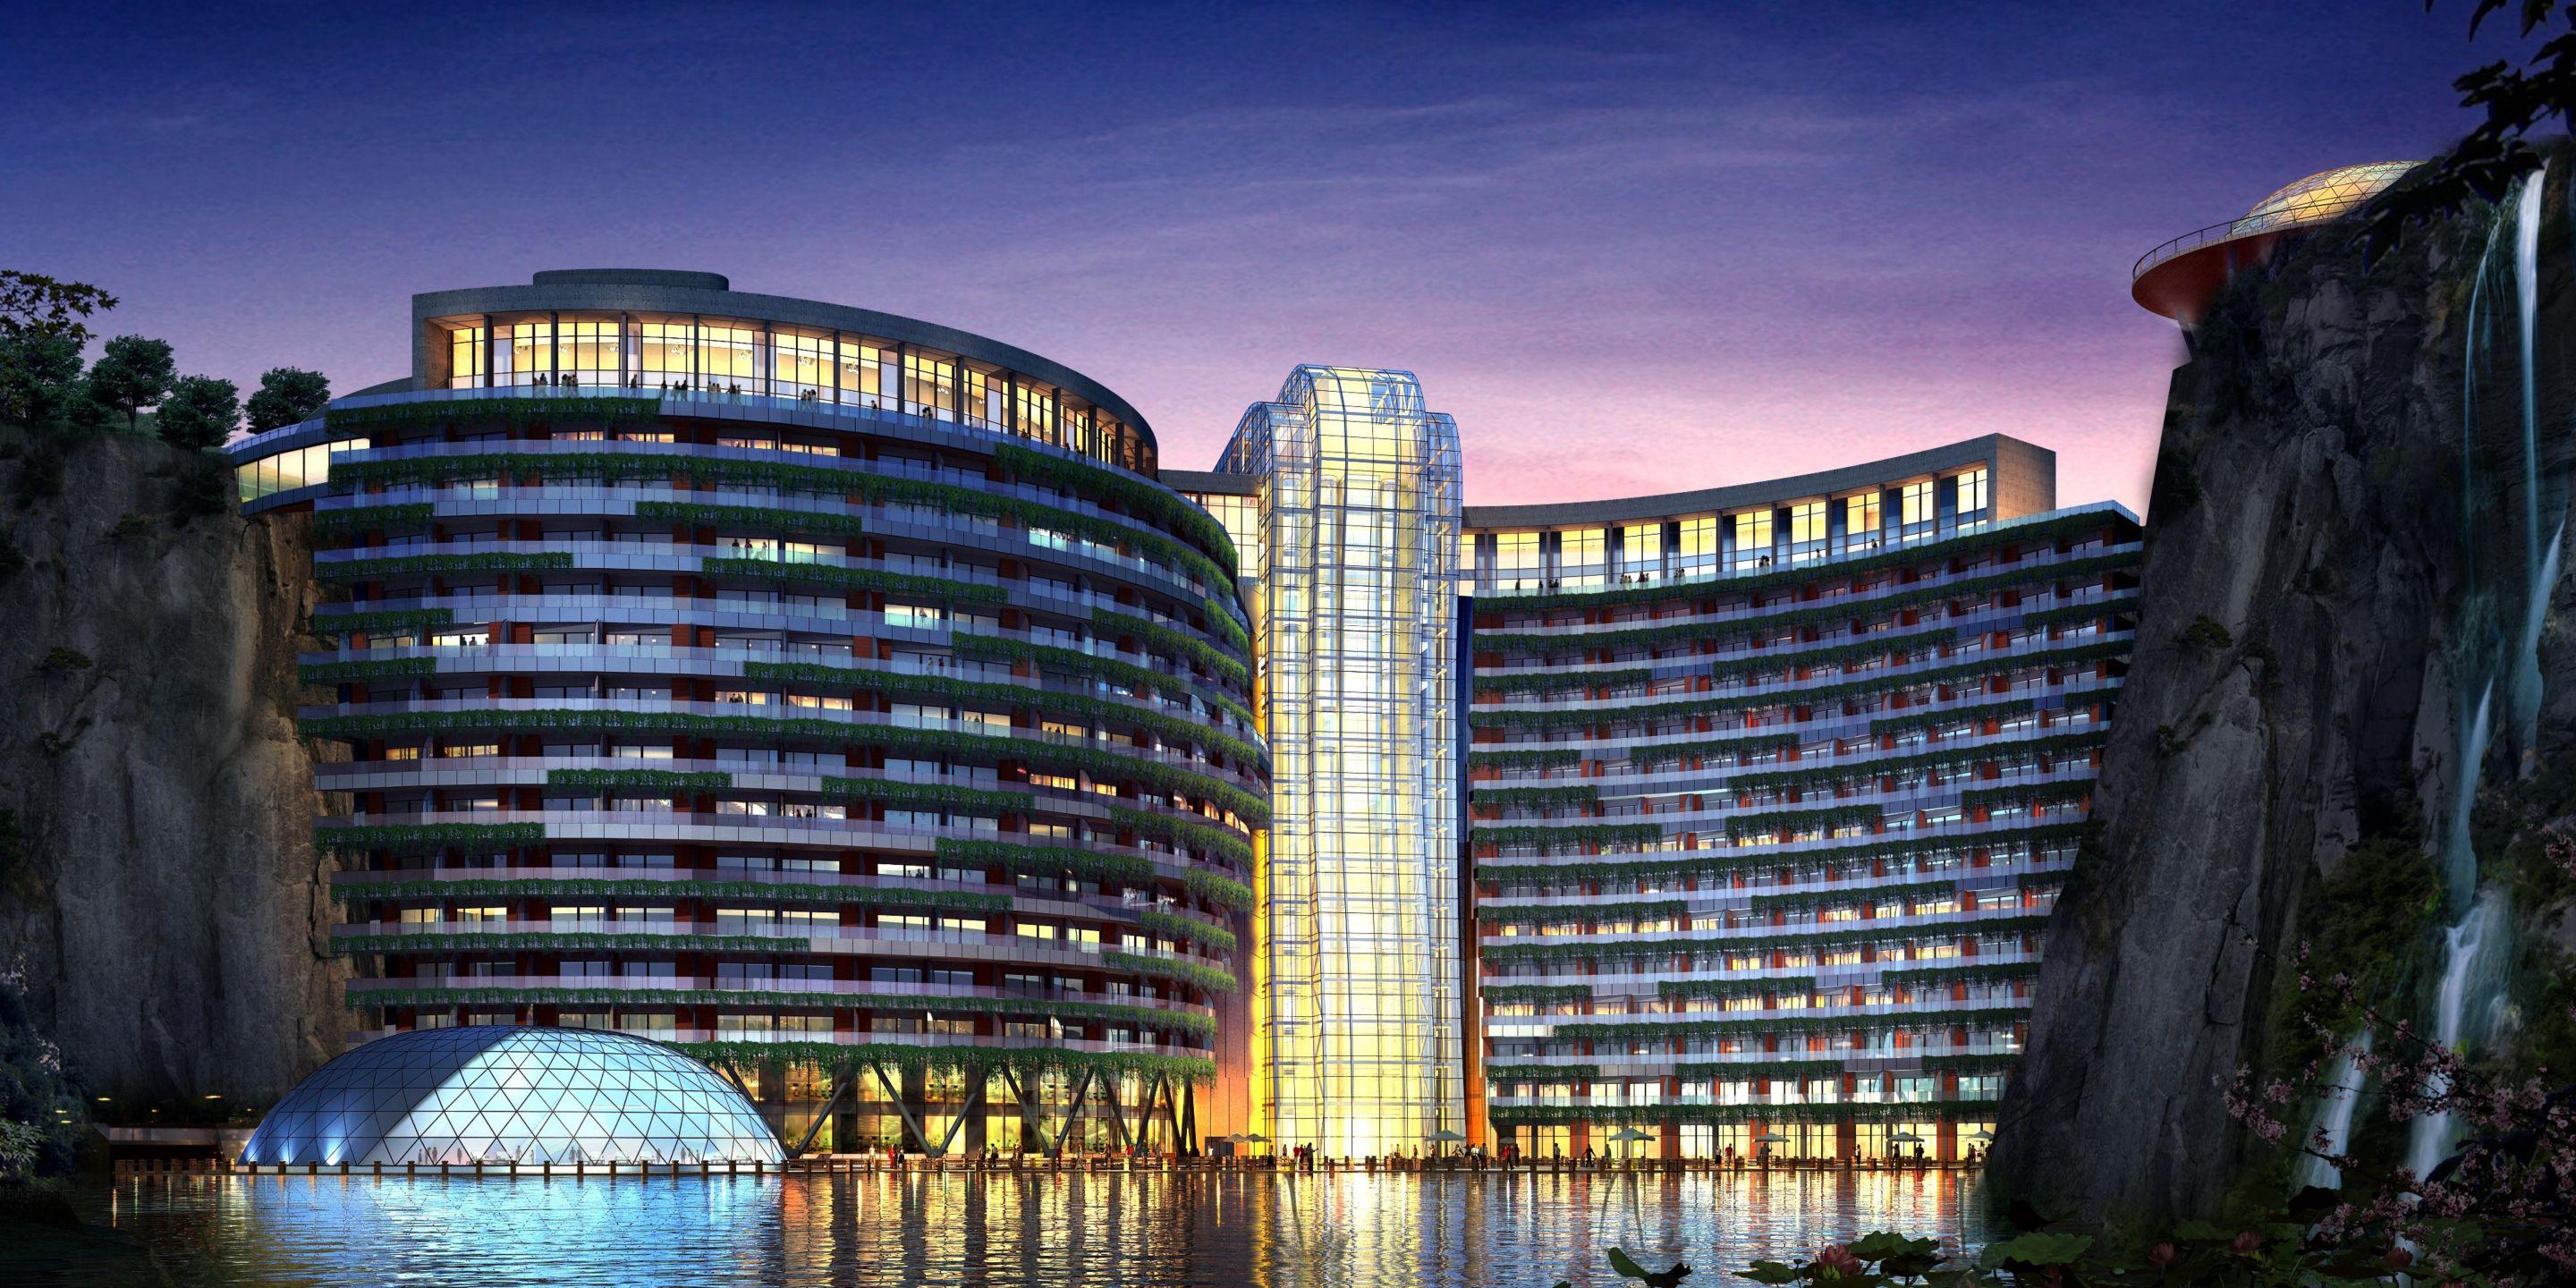 上海"深坑酒店"露真容 被誉为世界建筑奇迹_新闻频道__中国青年网